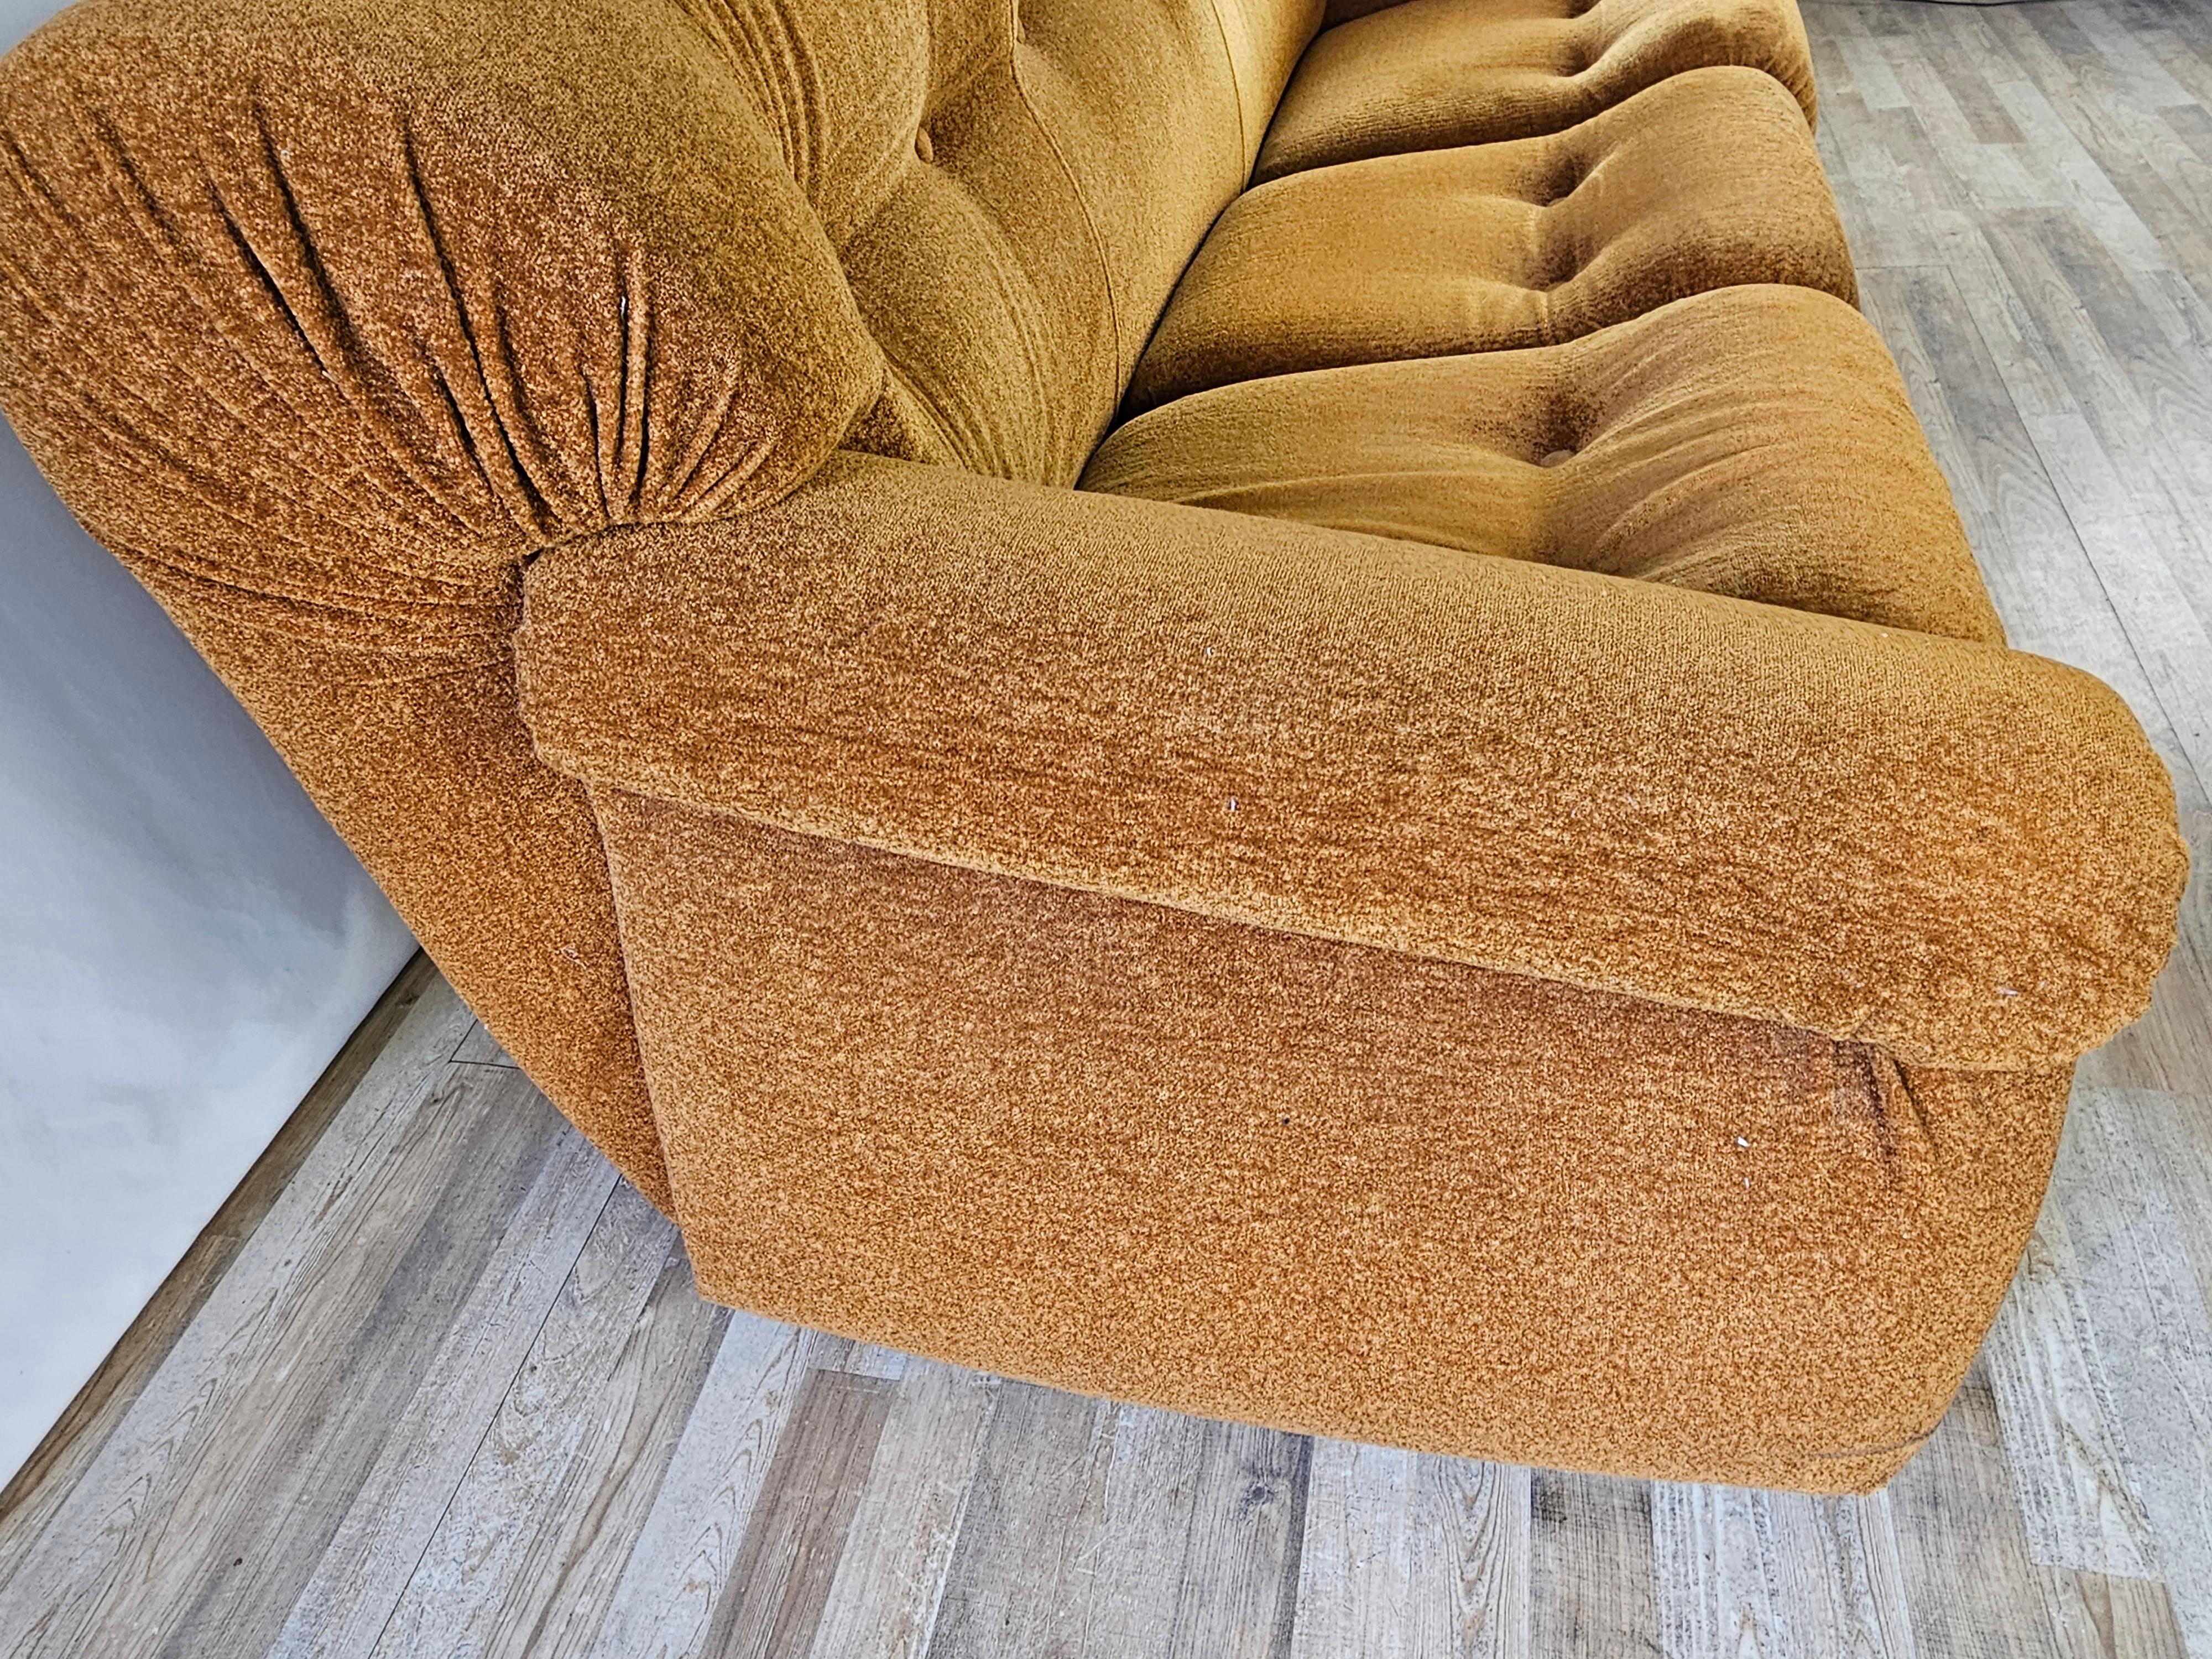 Divano di design anni '70, produzione italiana di alta qualità e manifattura della DOIMO Salotti Made in Italy.

Il divano è un tre posti rivestito in stoffa, pronto all'uso grazie alla sua comodità e al suo comfort di seduta.

Seduta H 42cm.